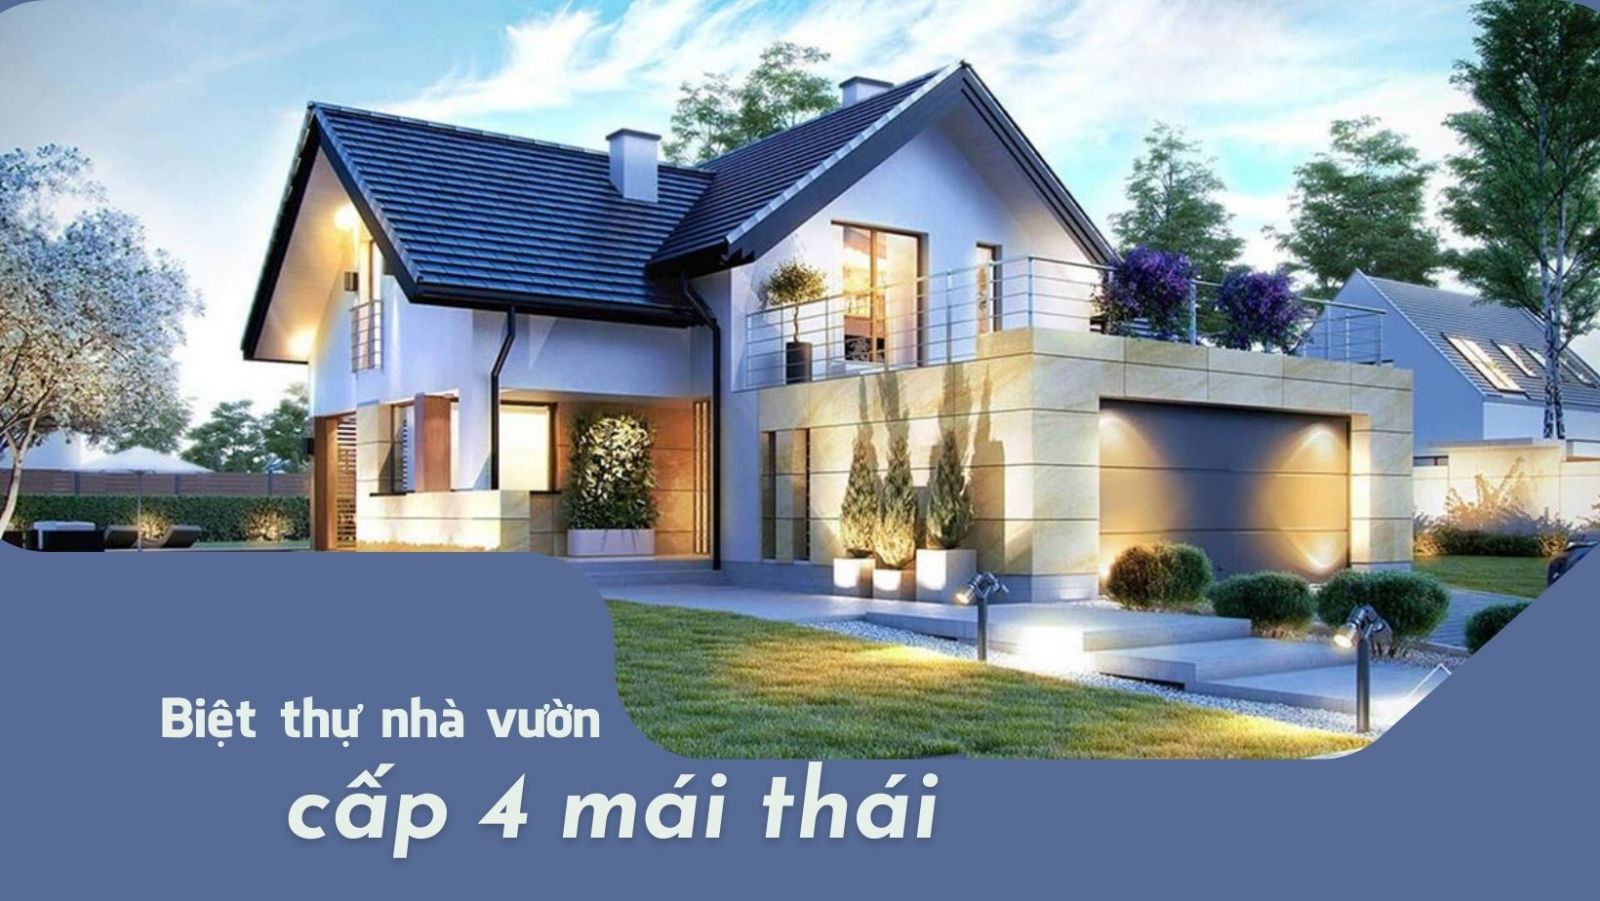 Mẫu biệt thự nhà vườn mái Thái 2 tầng đẹp - Mã số: ACHI 23100